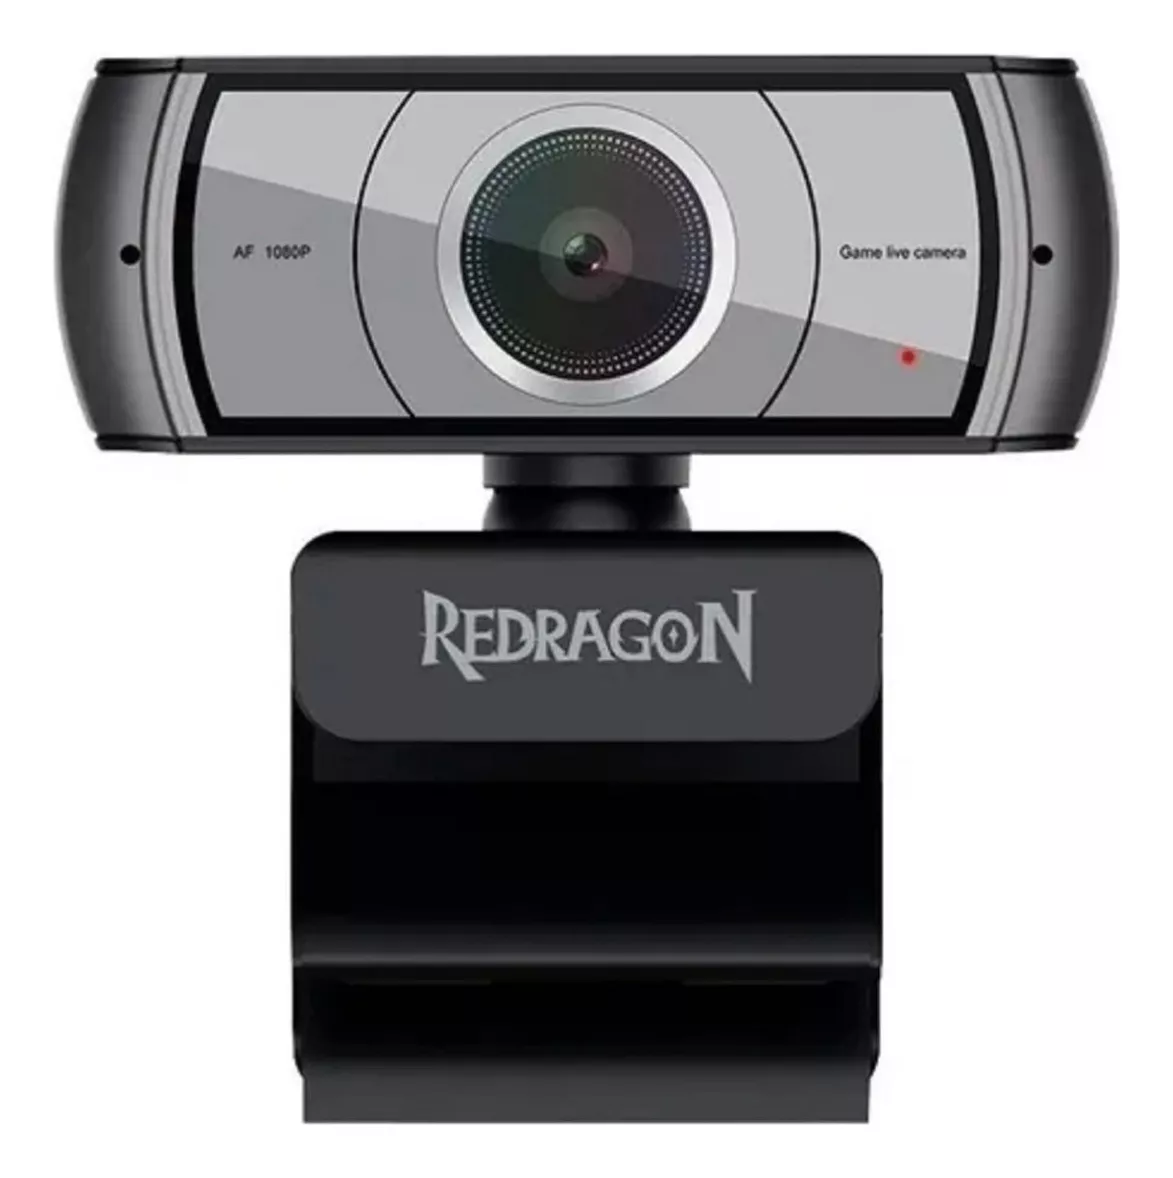 Primeira imagem para pesquisa de webcam redragon